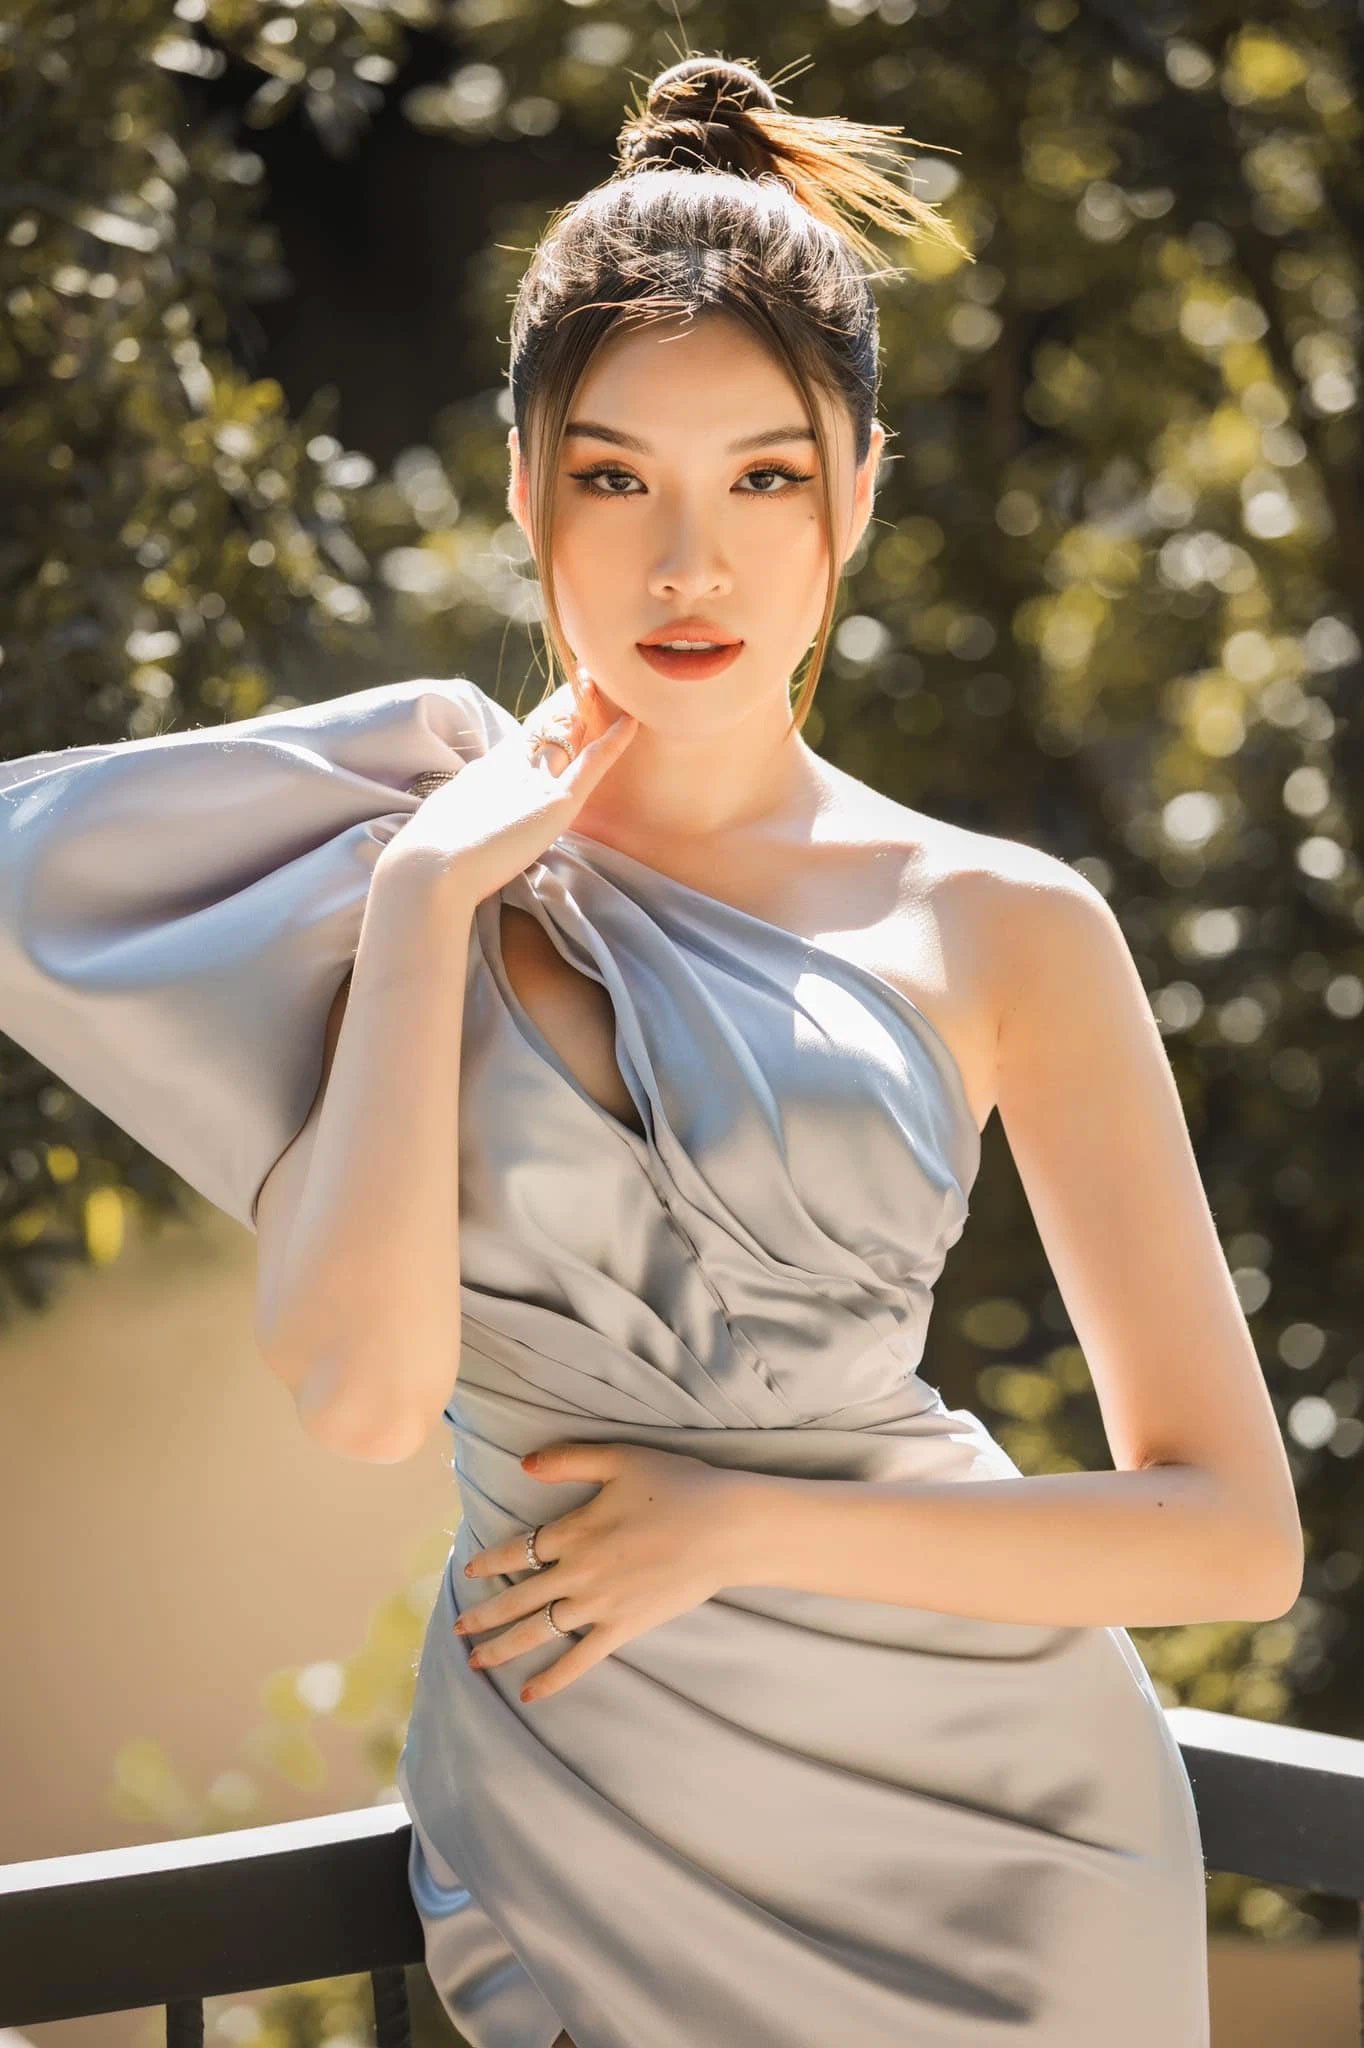 Nữ MC Nha Trang chia sẻ bí quyết có body đẹp để diện áo tắm mà không cần hóp bụng - 4